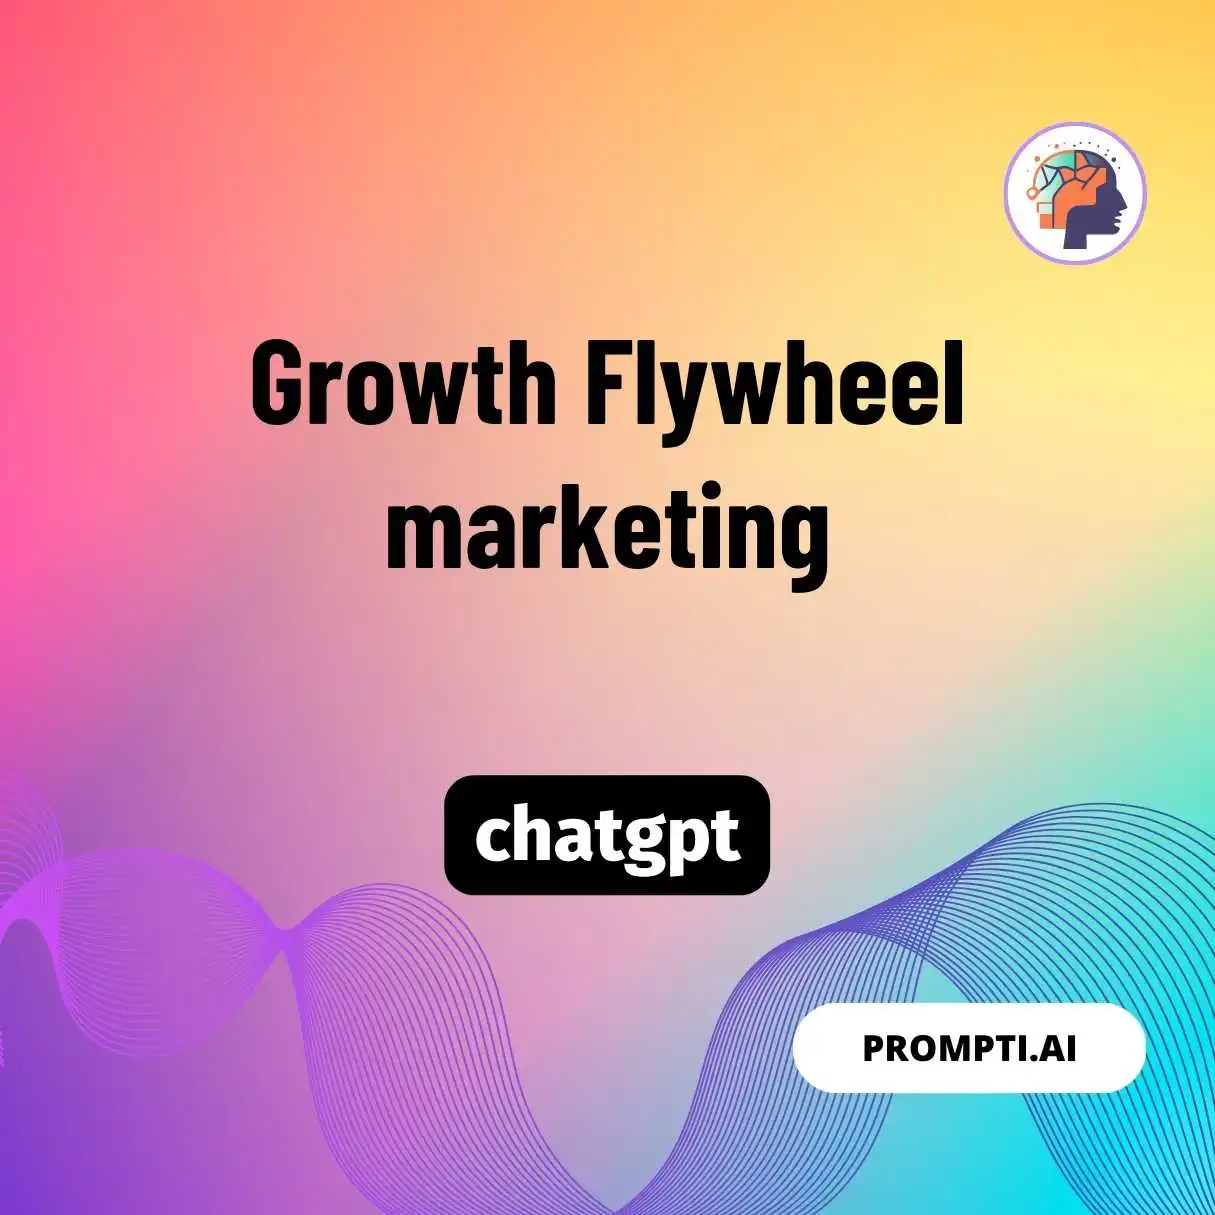 Growth Flywheel marketing